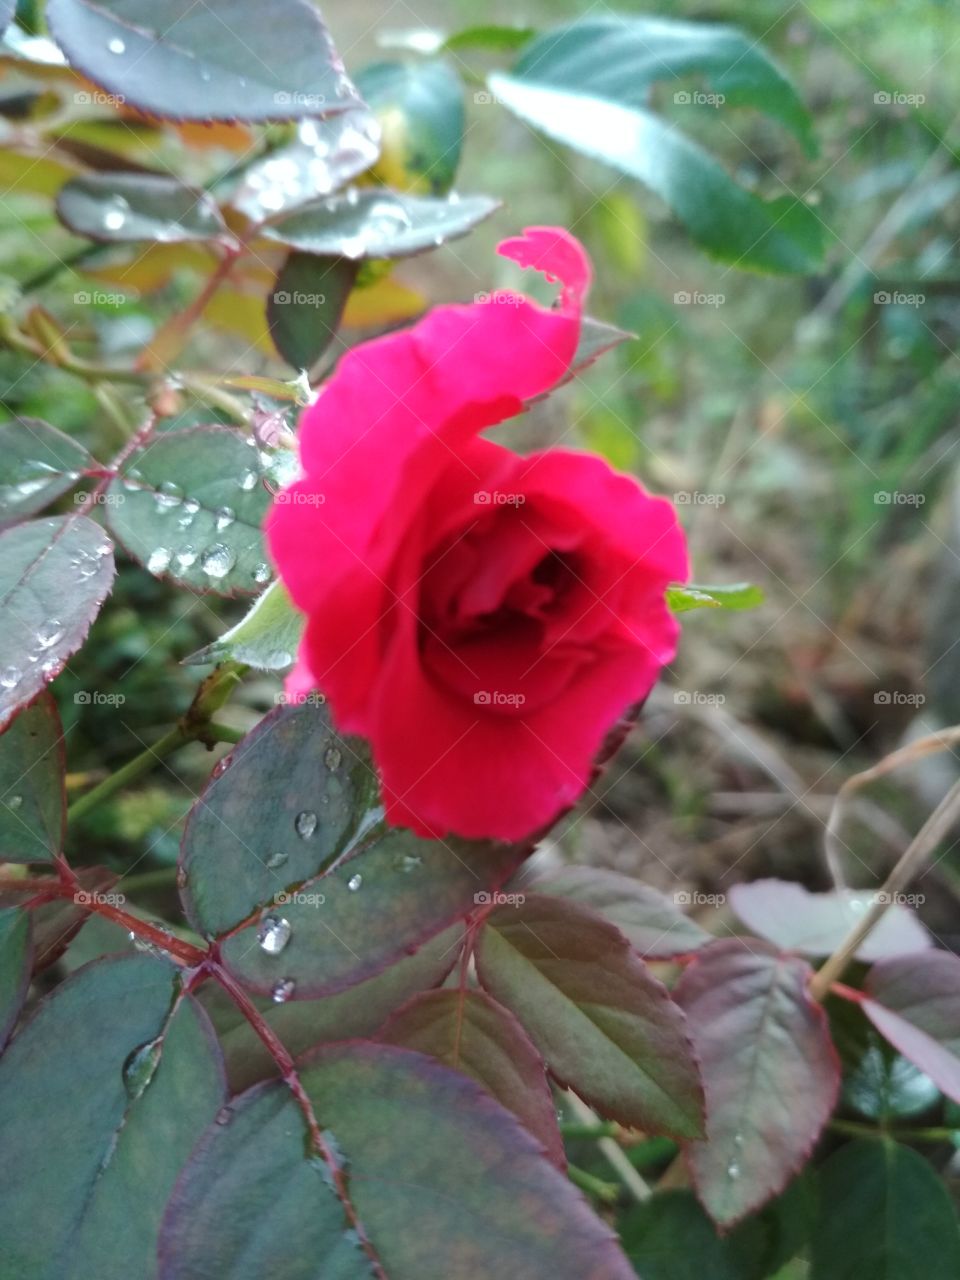 grow rose